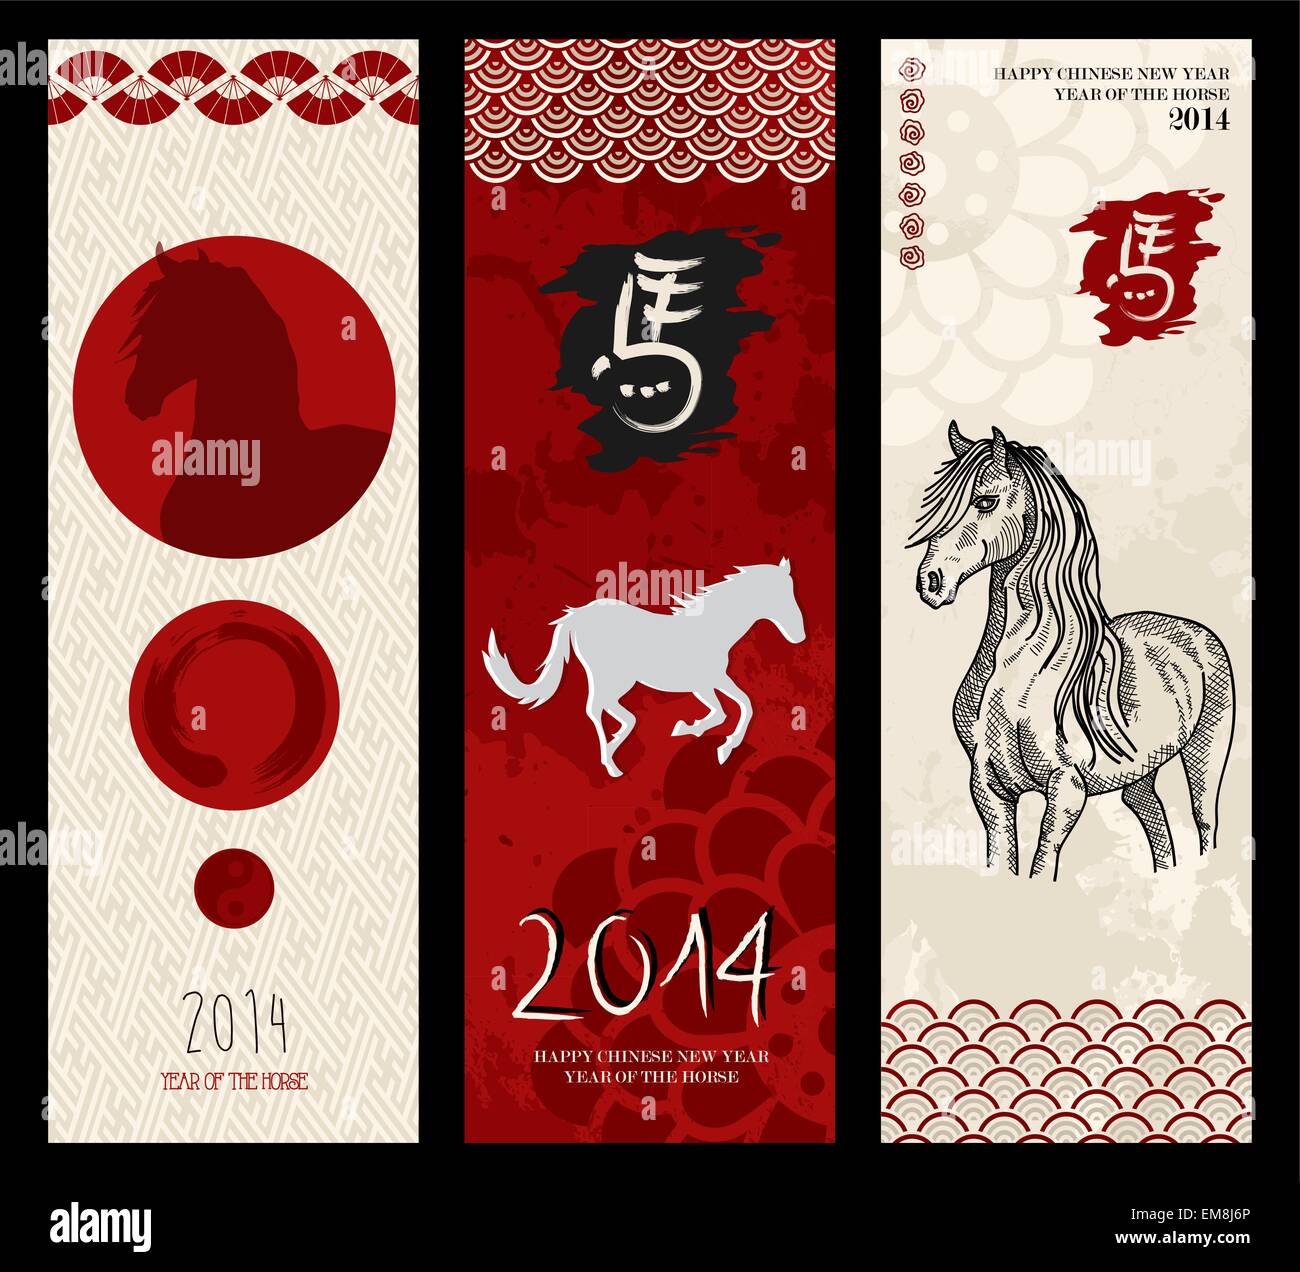 Chinesisches Neujahr der Pferd-Web-Banner. EPS10 Datei. Stock Vektor